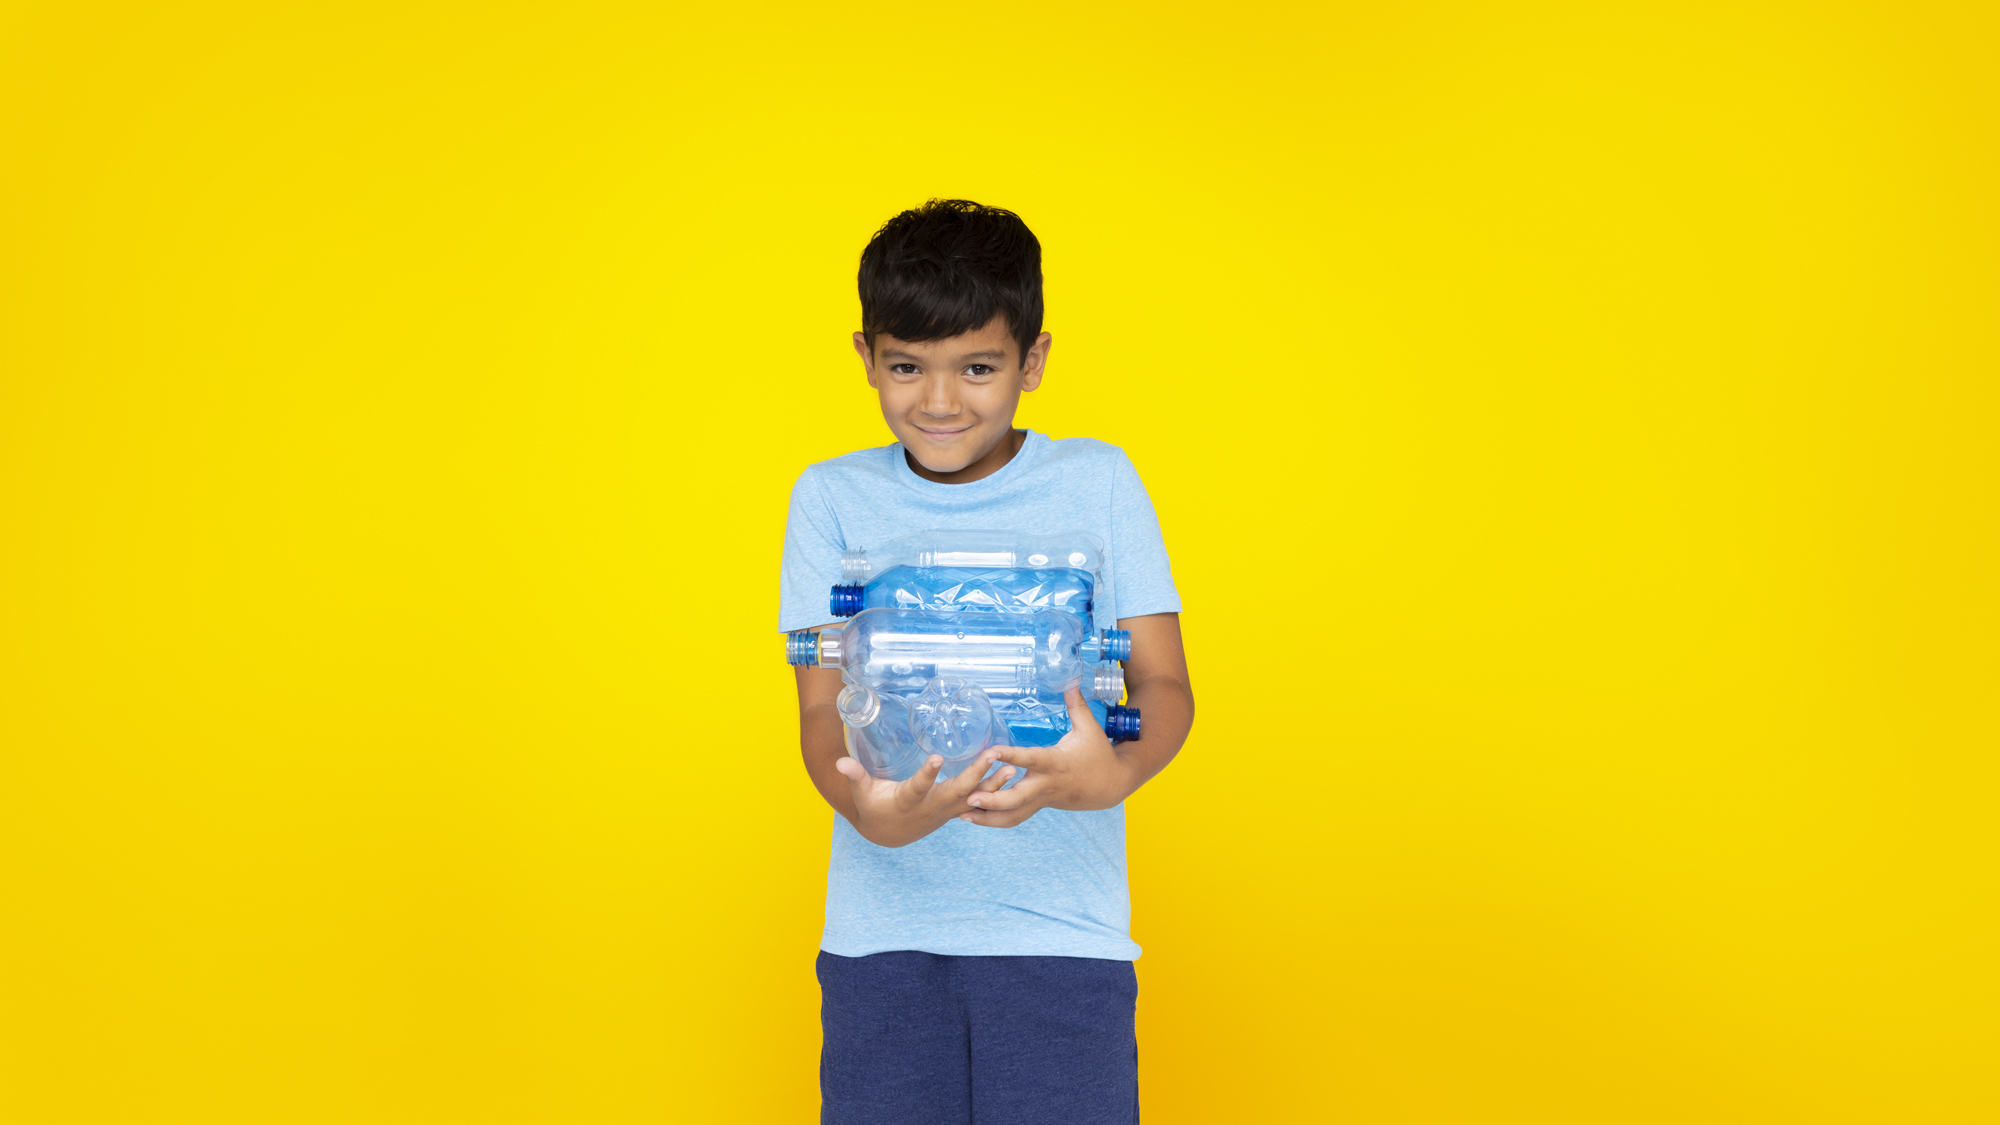 Junge vor gelbem Hintergrund, der PET-Flaschen hält